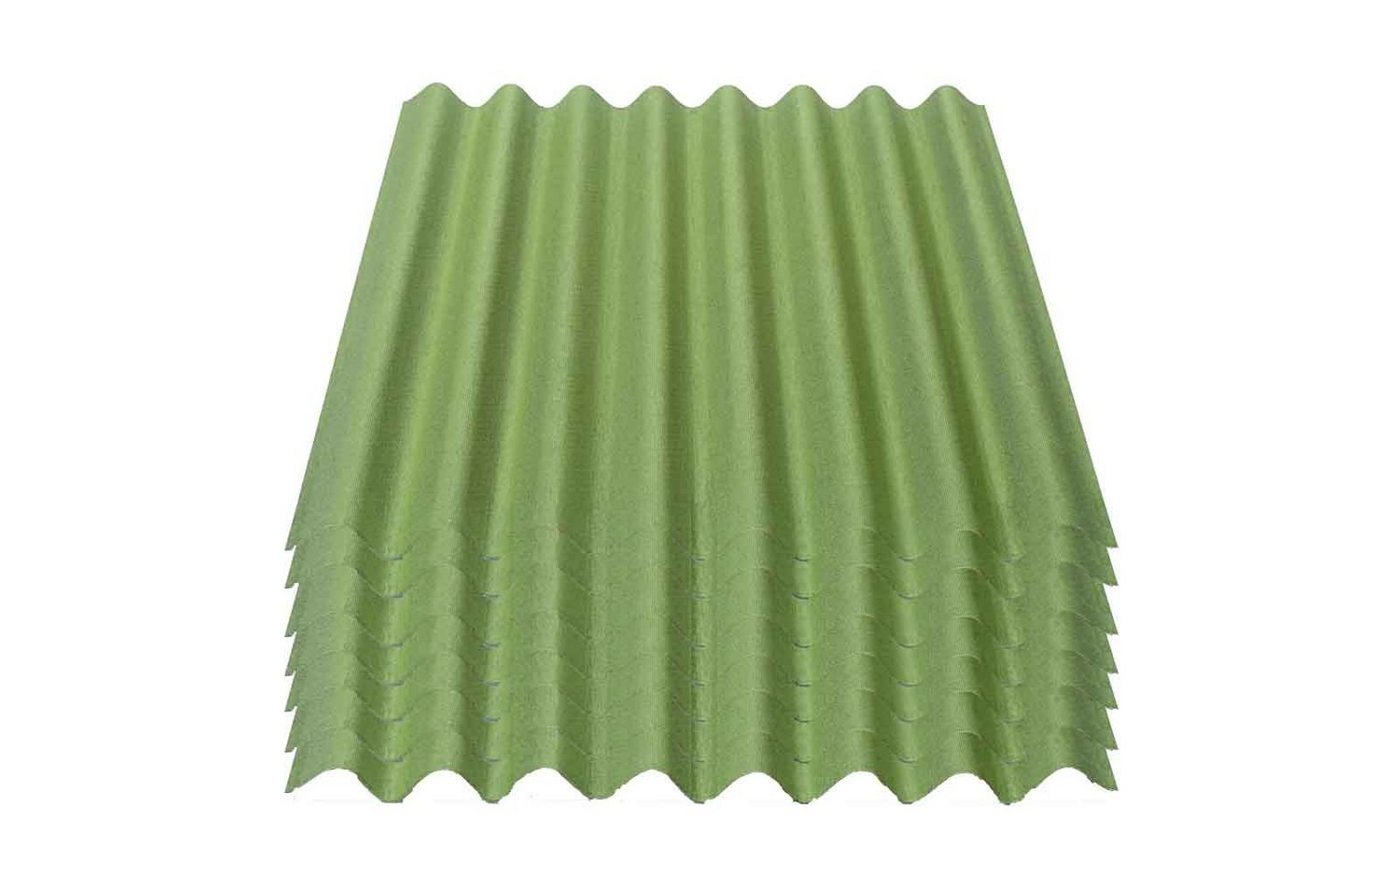 Onduline Dachpappe Onduline Easyline Dachplatte Wandplatte Bitumenwellplatten Wellplatte 7x0,76m² - grün, wellig, 5.32 m² pro Paket, (7-St) von Onduline